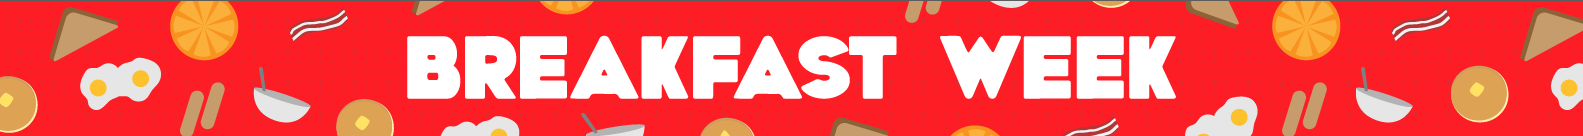 Eater-BreakfastWeek-Banner.0.png